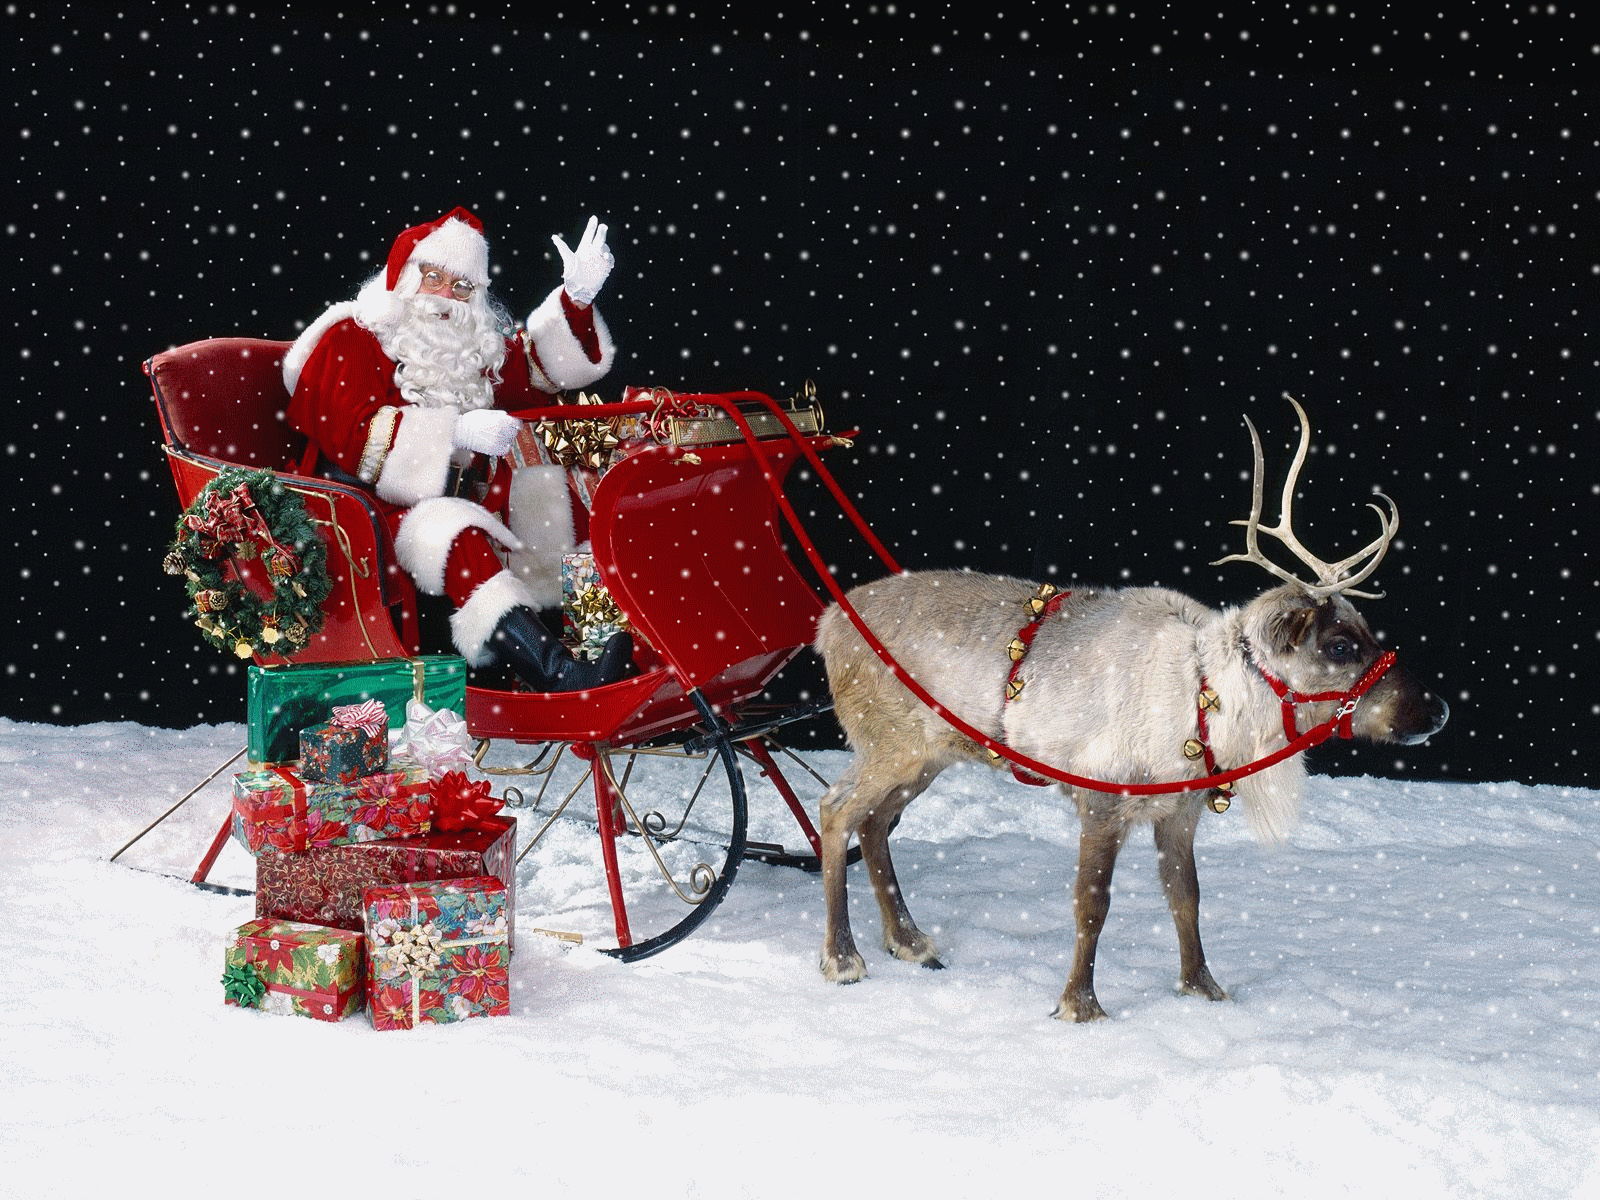 GIFy ze Świętym Mikołajem - animowane obrazki ze Świętym Mikołajem